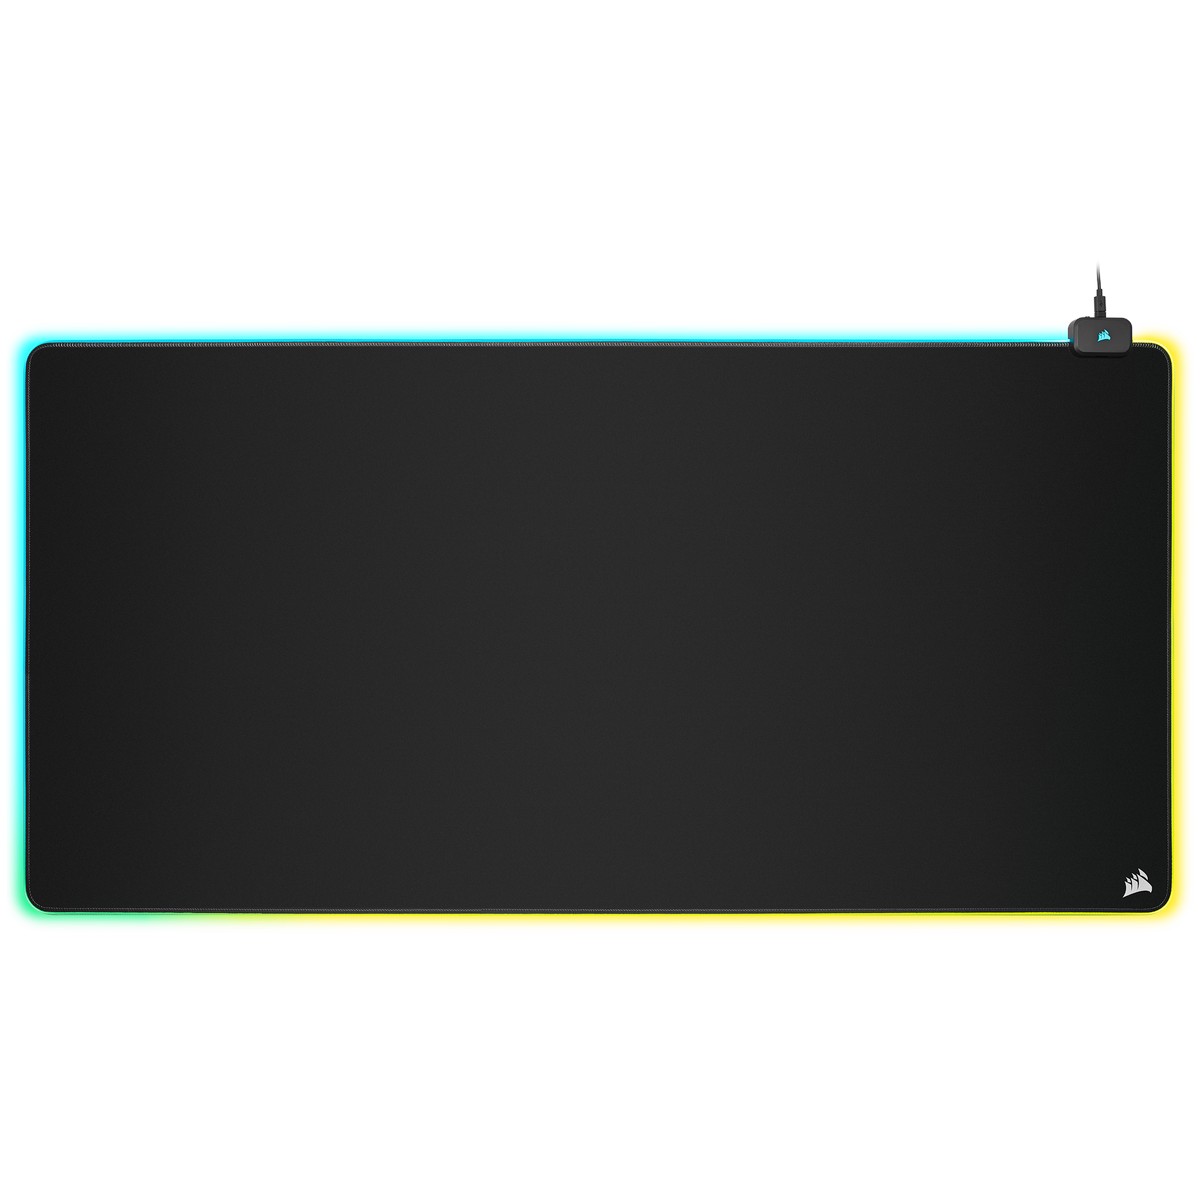 CORSAIR - Corsair MM700 RGB Desk Gaming Surface - 3XL 1200x610x4mm (CH-9417080-WW)